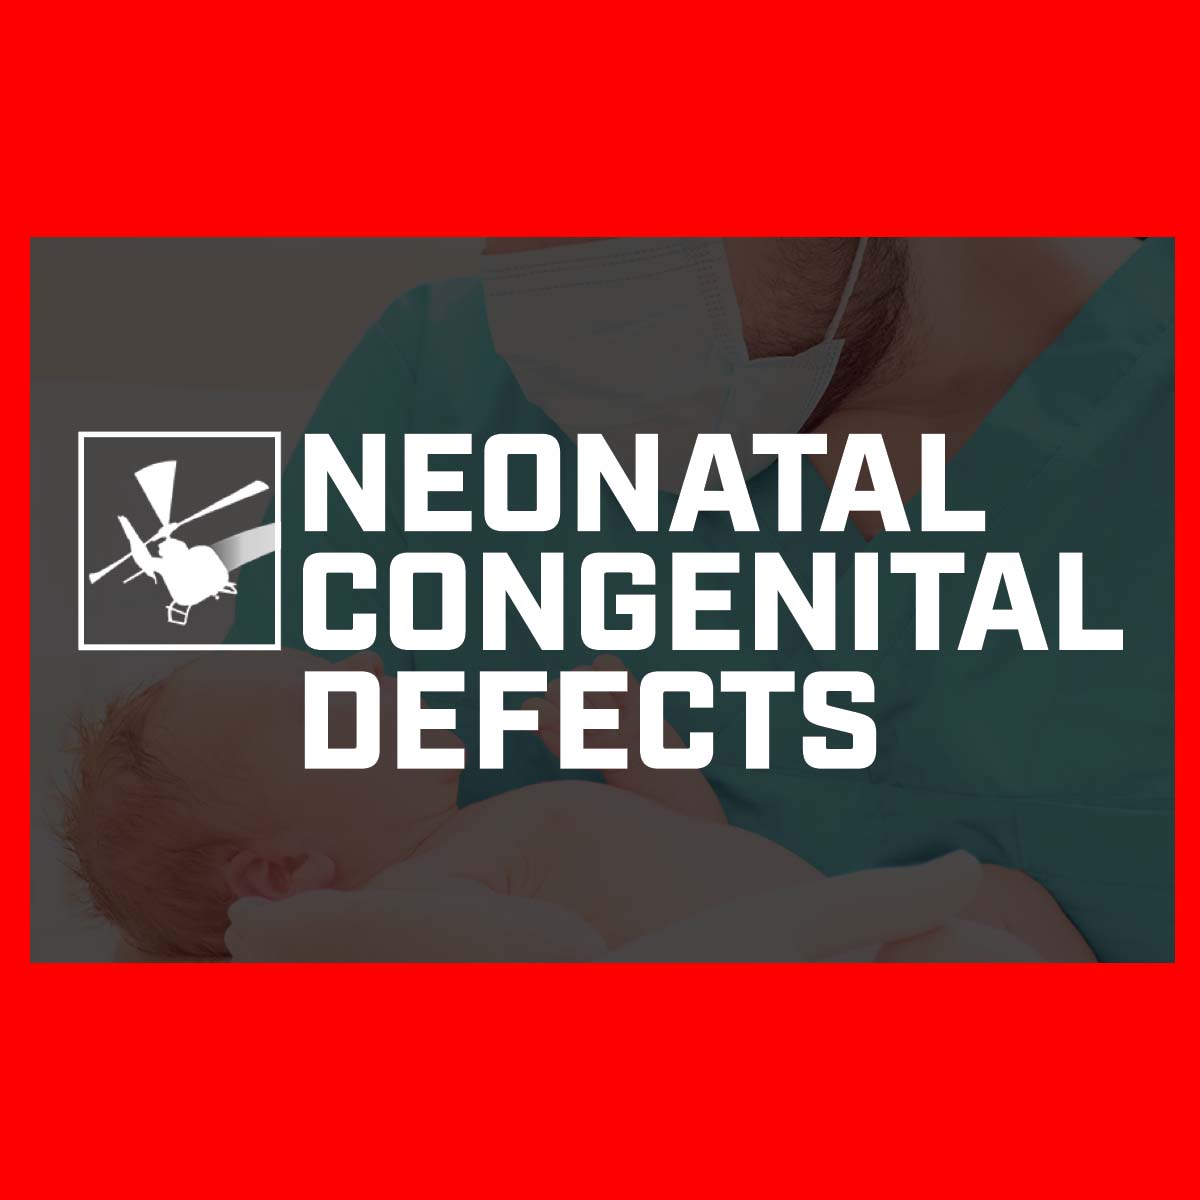 Neonatal Congenital Defects